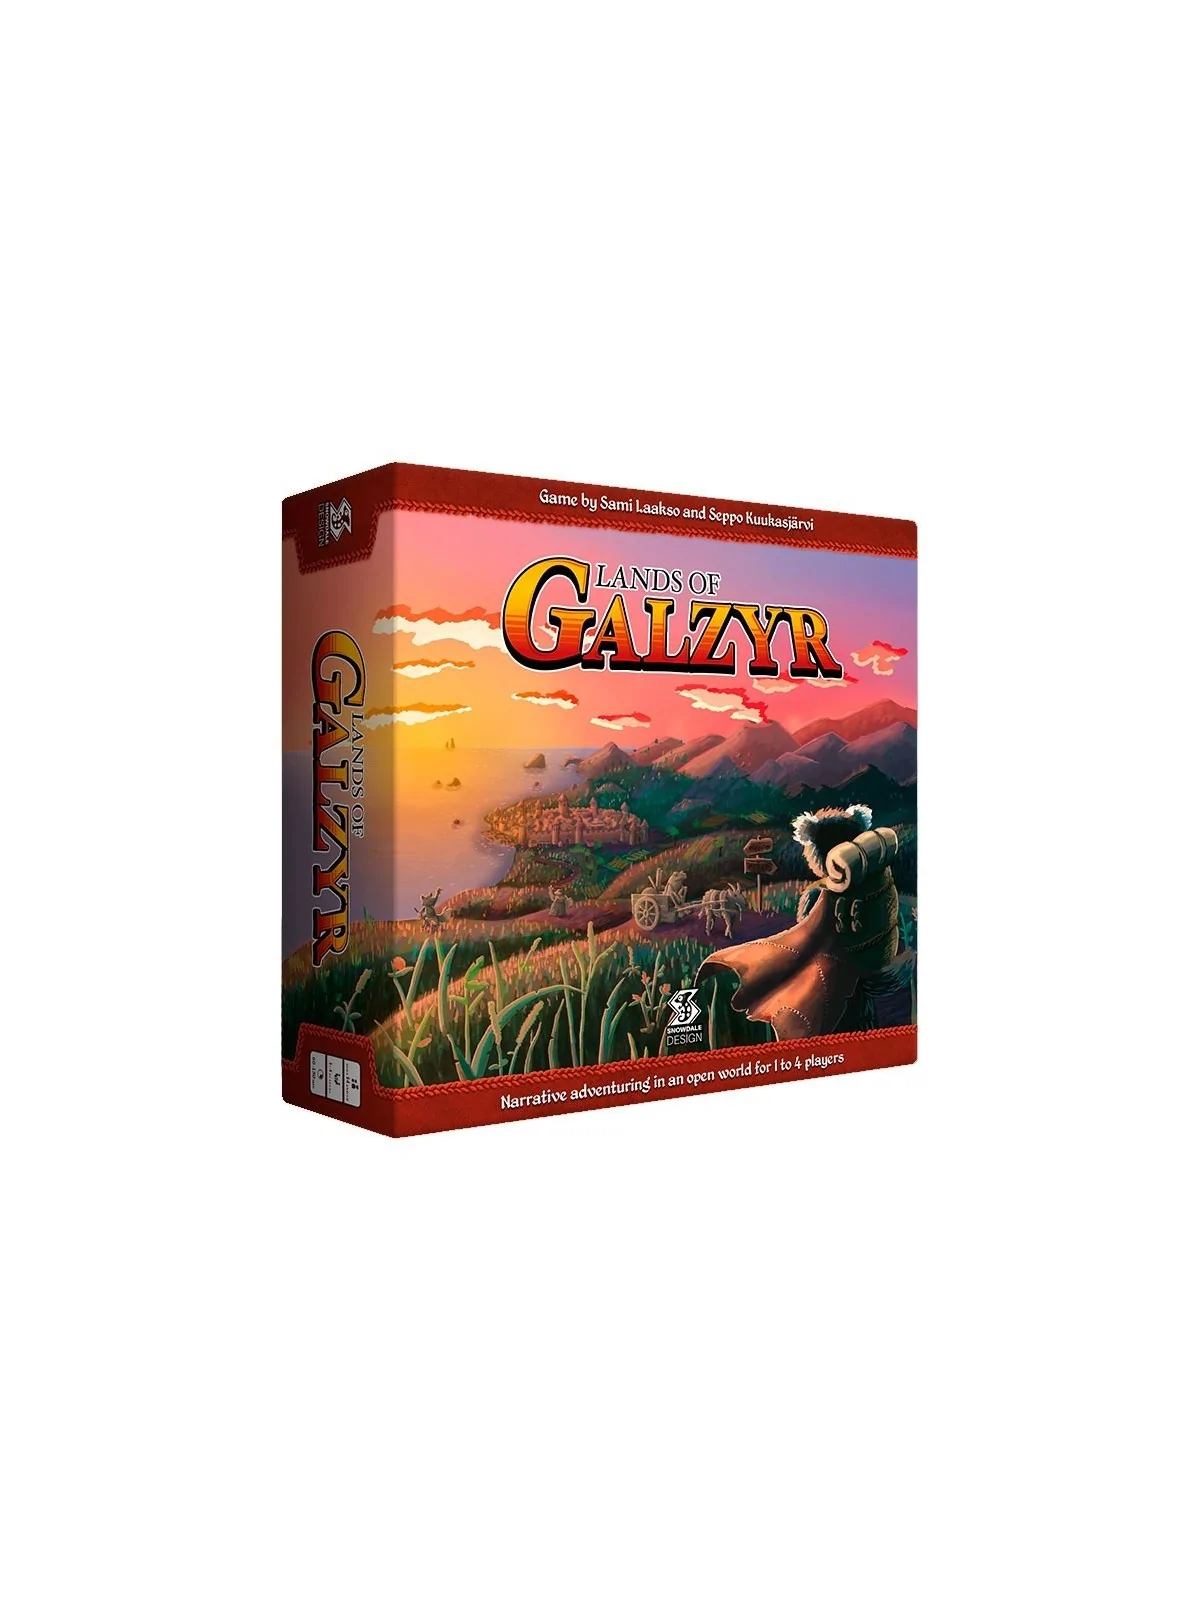 Comprar Lands of Galzyr barato al mejor precio 89,95 € de Two Tomatoes